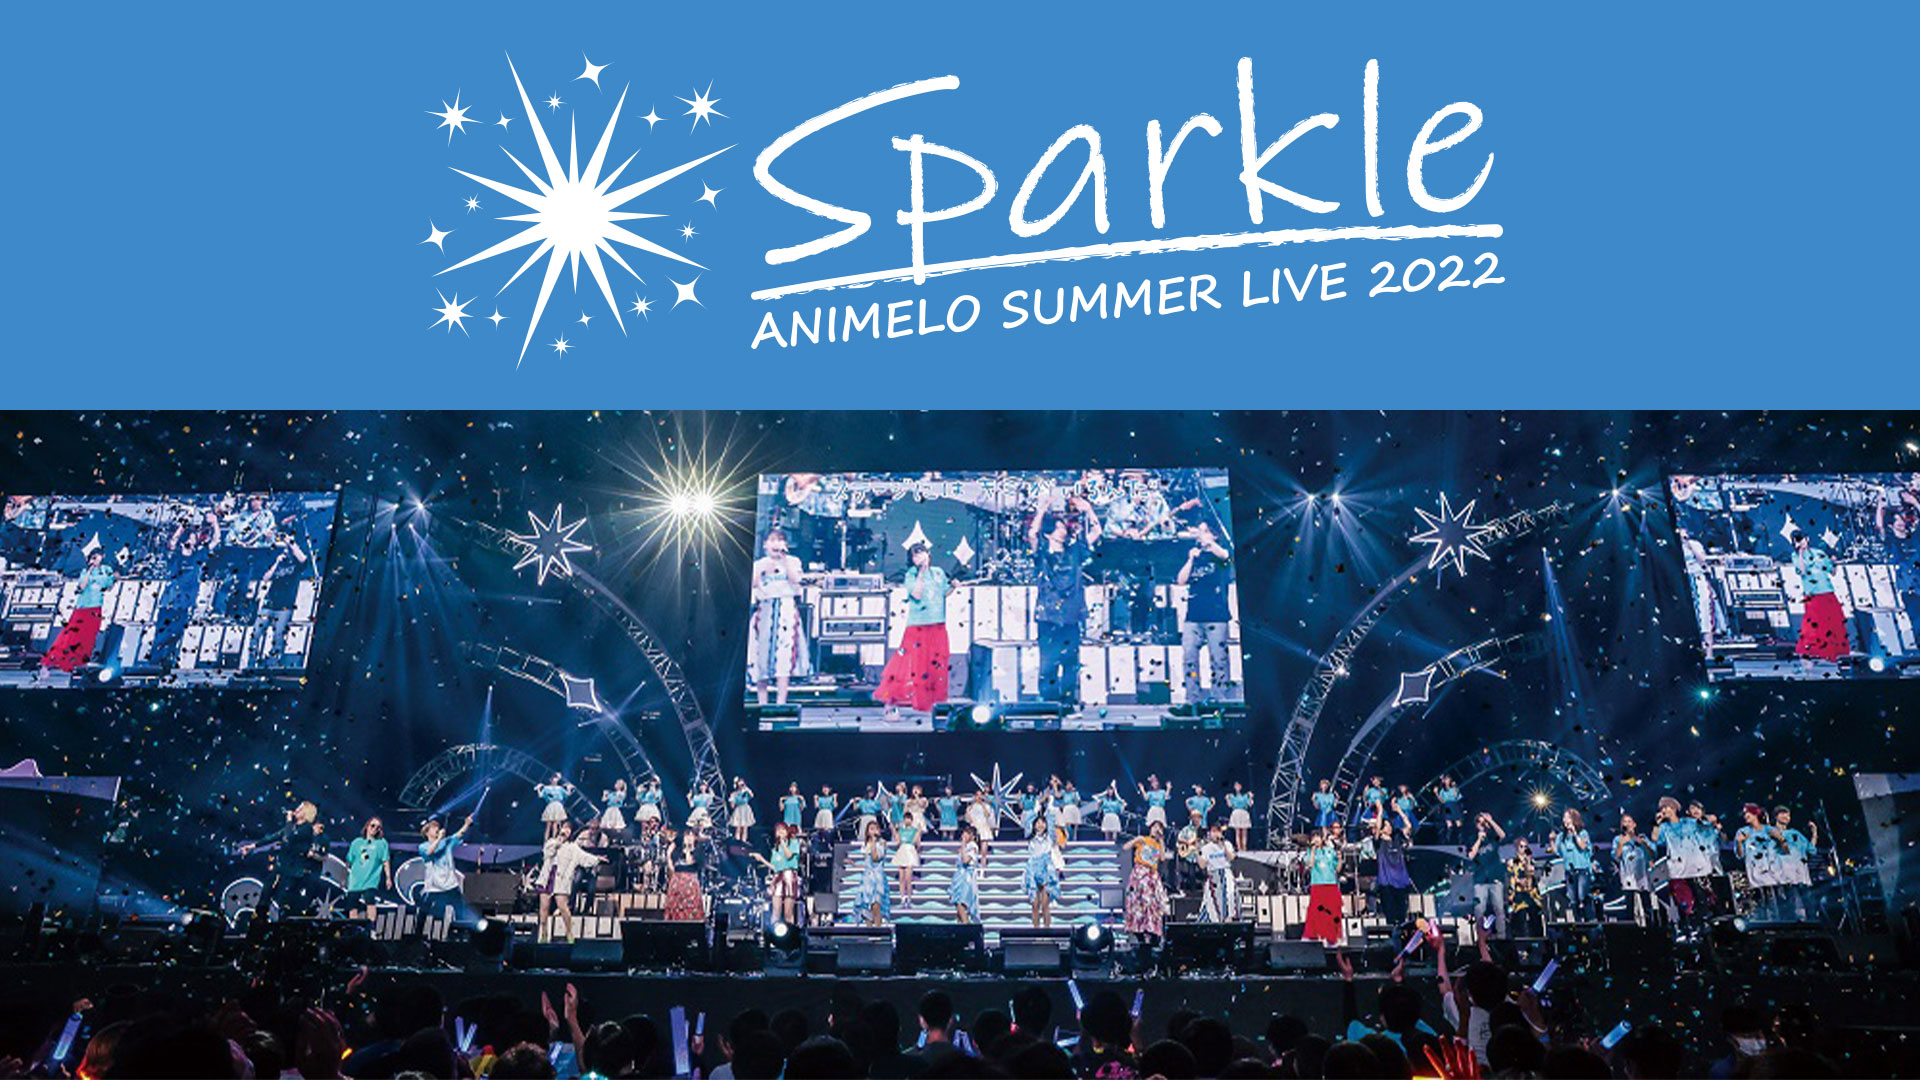 アニメロサマーライブ2022 -Sparkle- powered by Anison Days